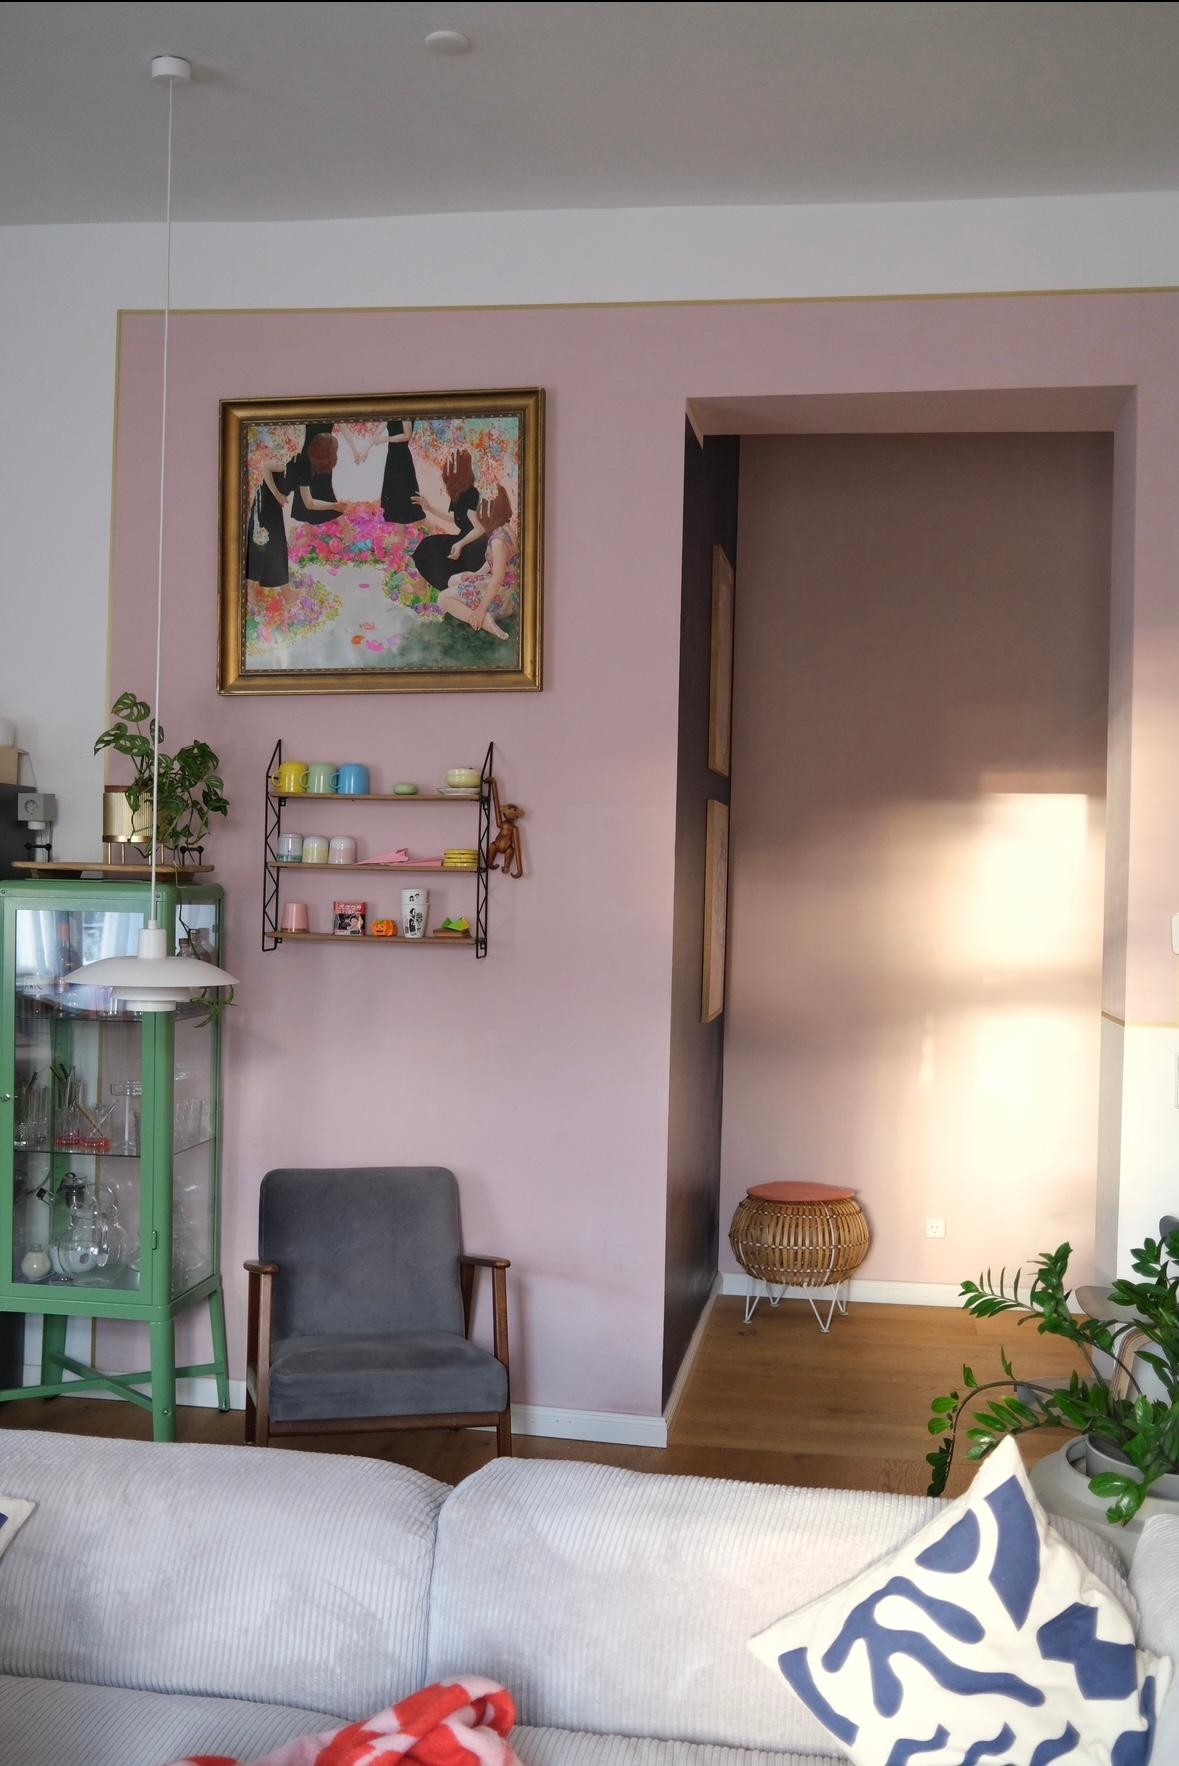 #wohnzimmer #altbauwohnung #couchliebt #gemütlich #farbenfroh #interior #sessel #leseecke